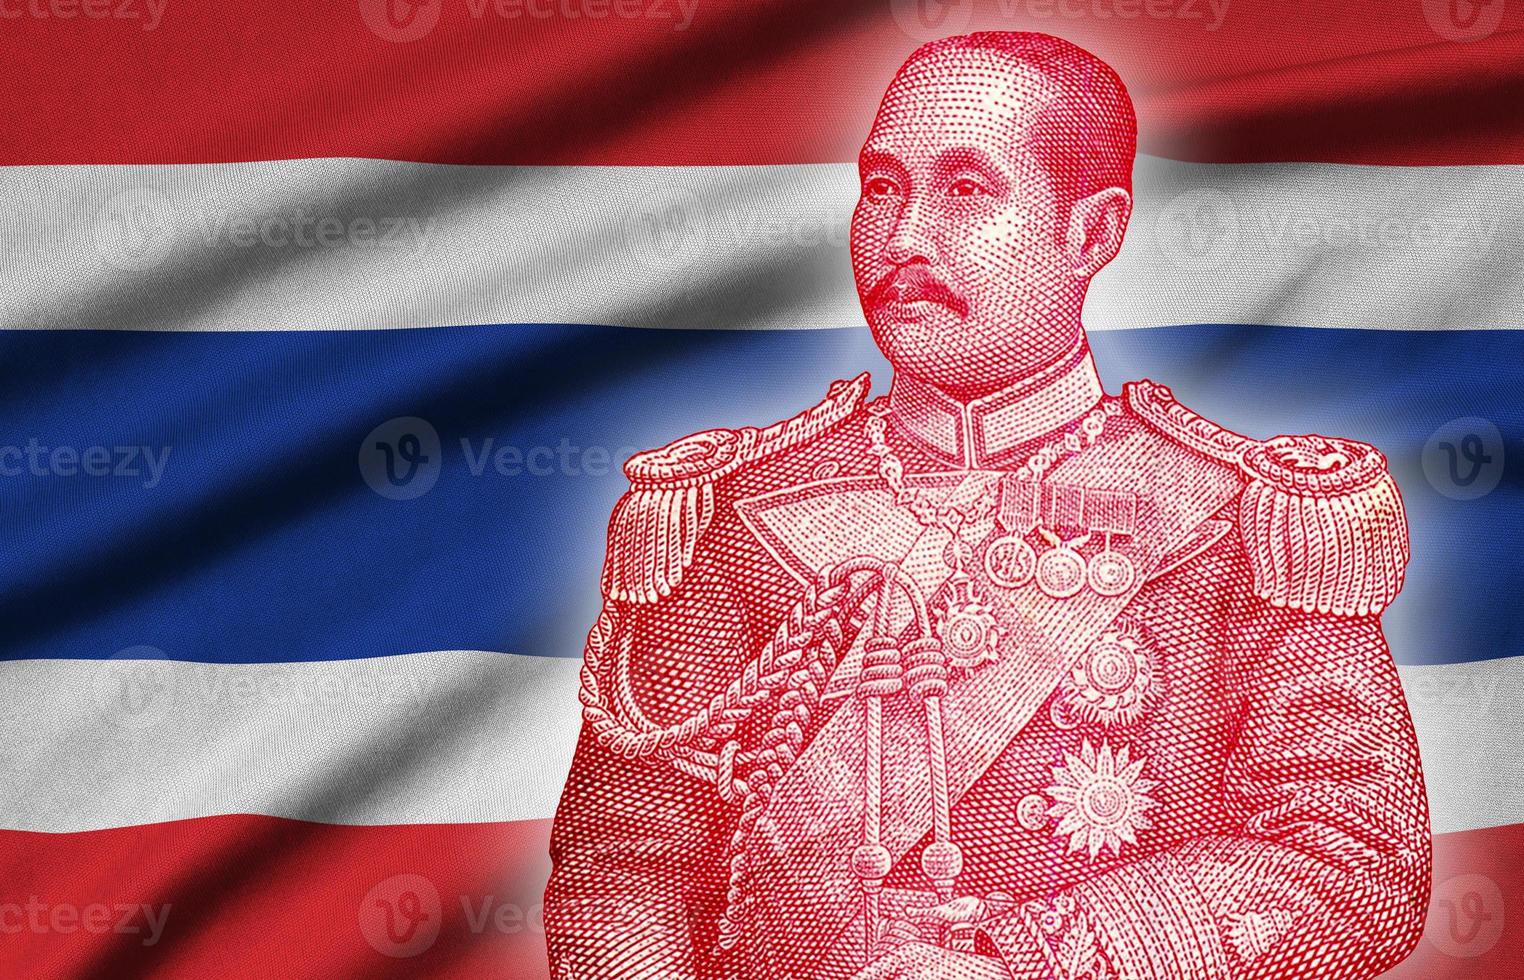 Porträt von Chulalongkorn, auch bekannt als König Rama V, war der fünfte Monarch von Siam unter dem Haus Chakri. Abbildung auf Thailand-Flagge foto